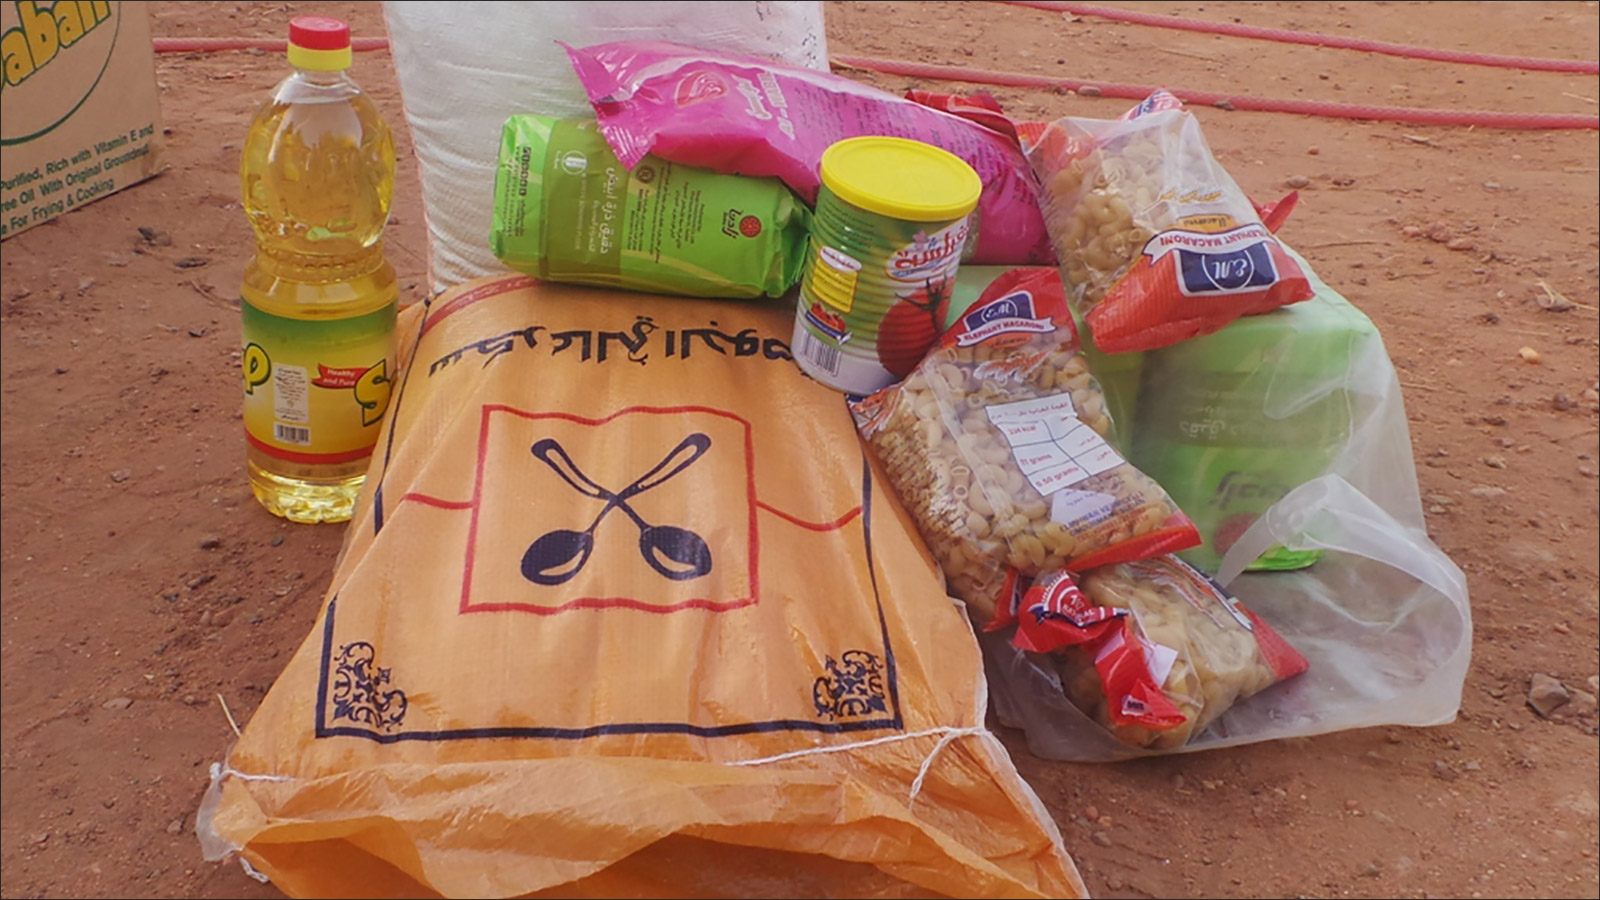 بعض المواد الغذائية التي وزعها سكان حي القماير بمدينة أم درمان في شهر رمضان الحالي 